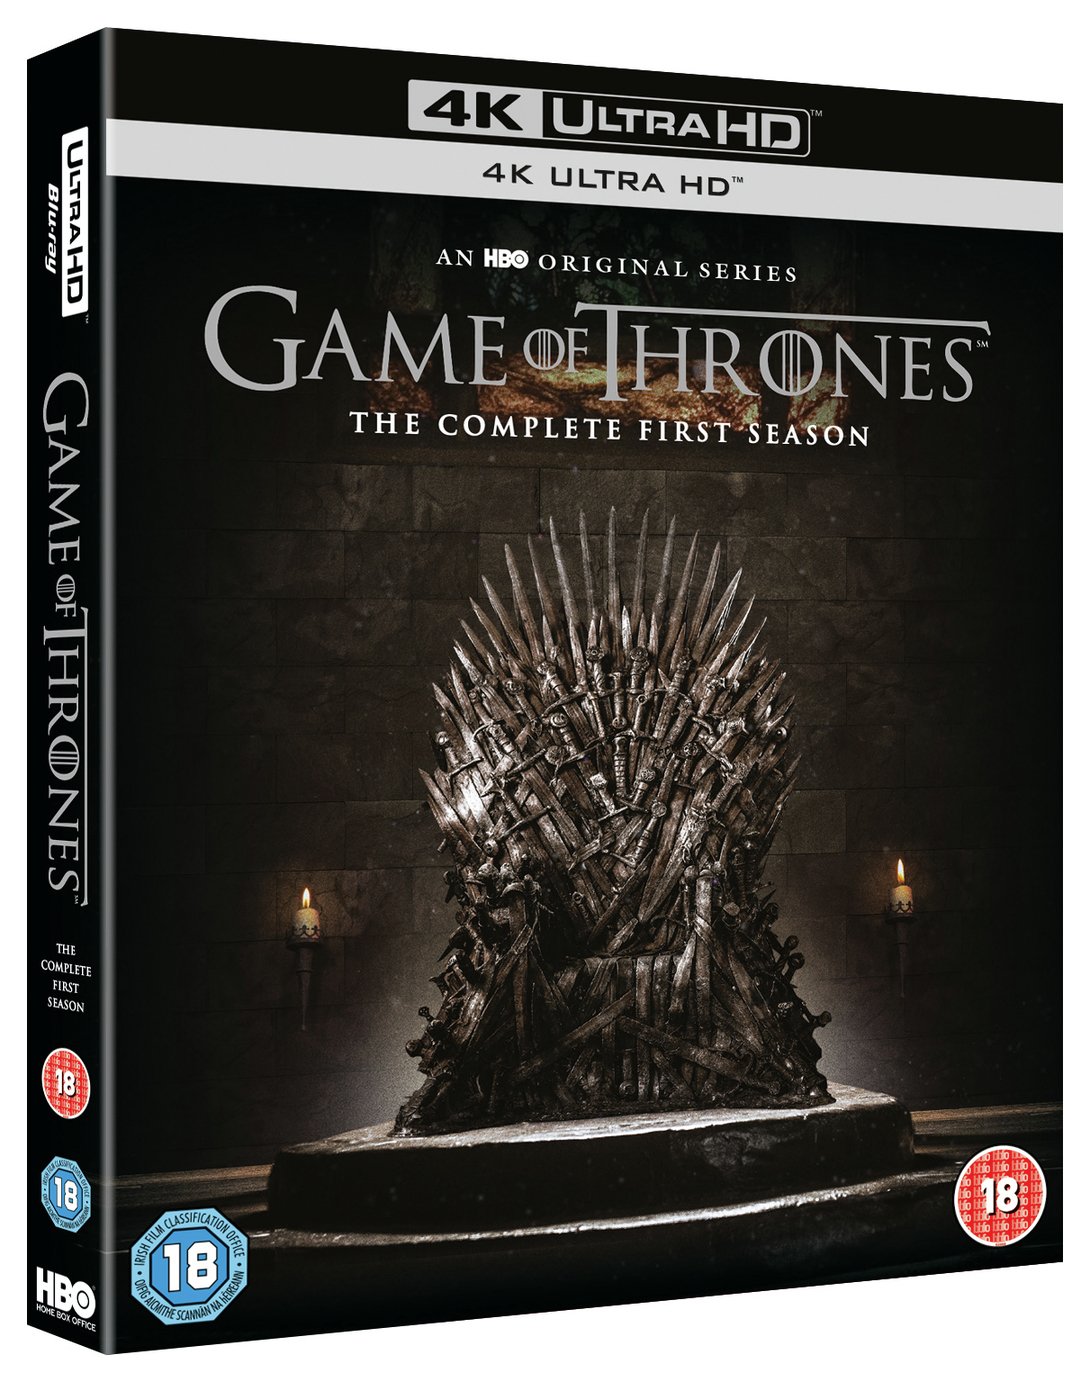 Game of Thrones Season 1 4K UHD Blu-Ray Box Set review